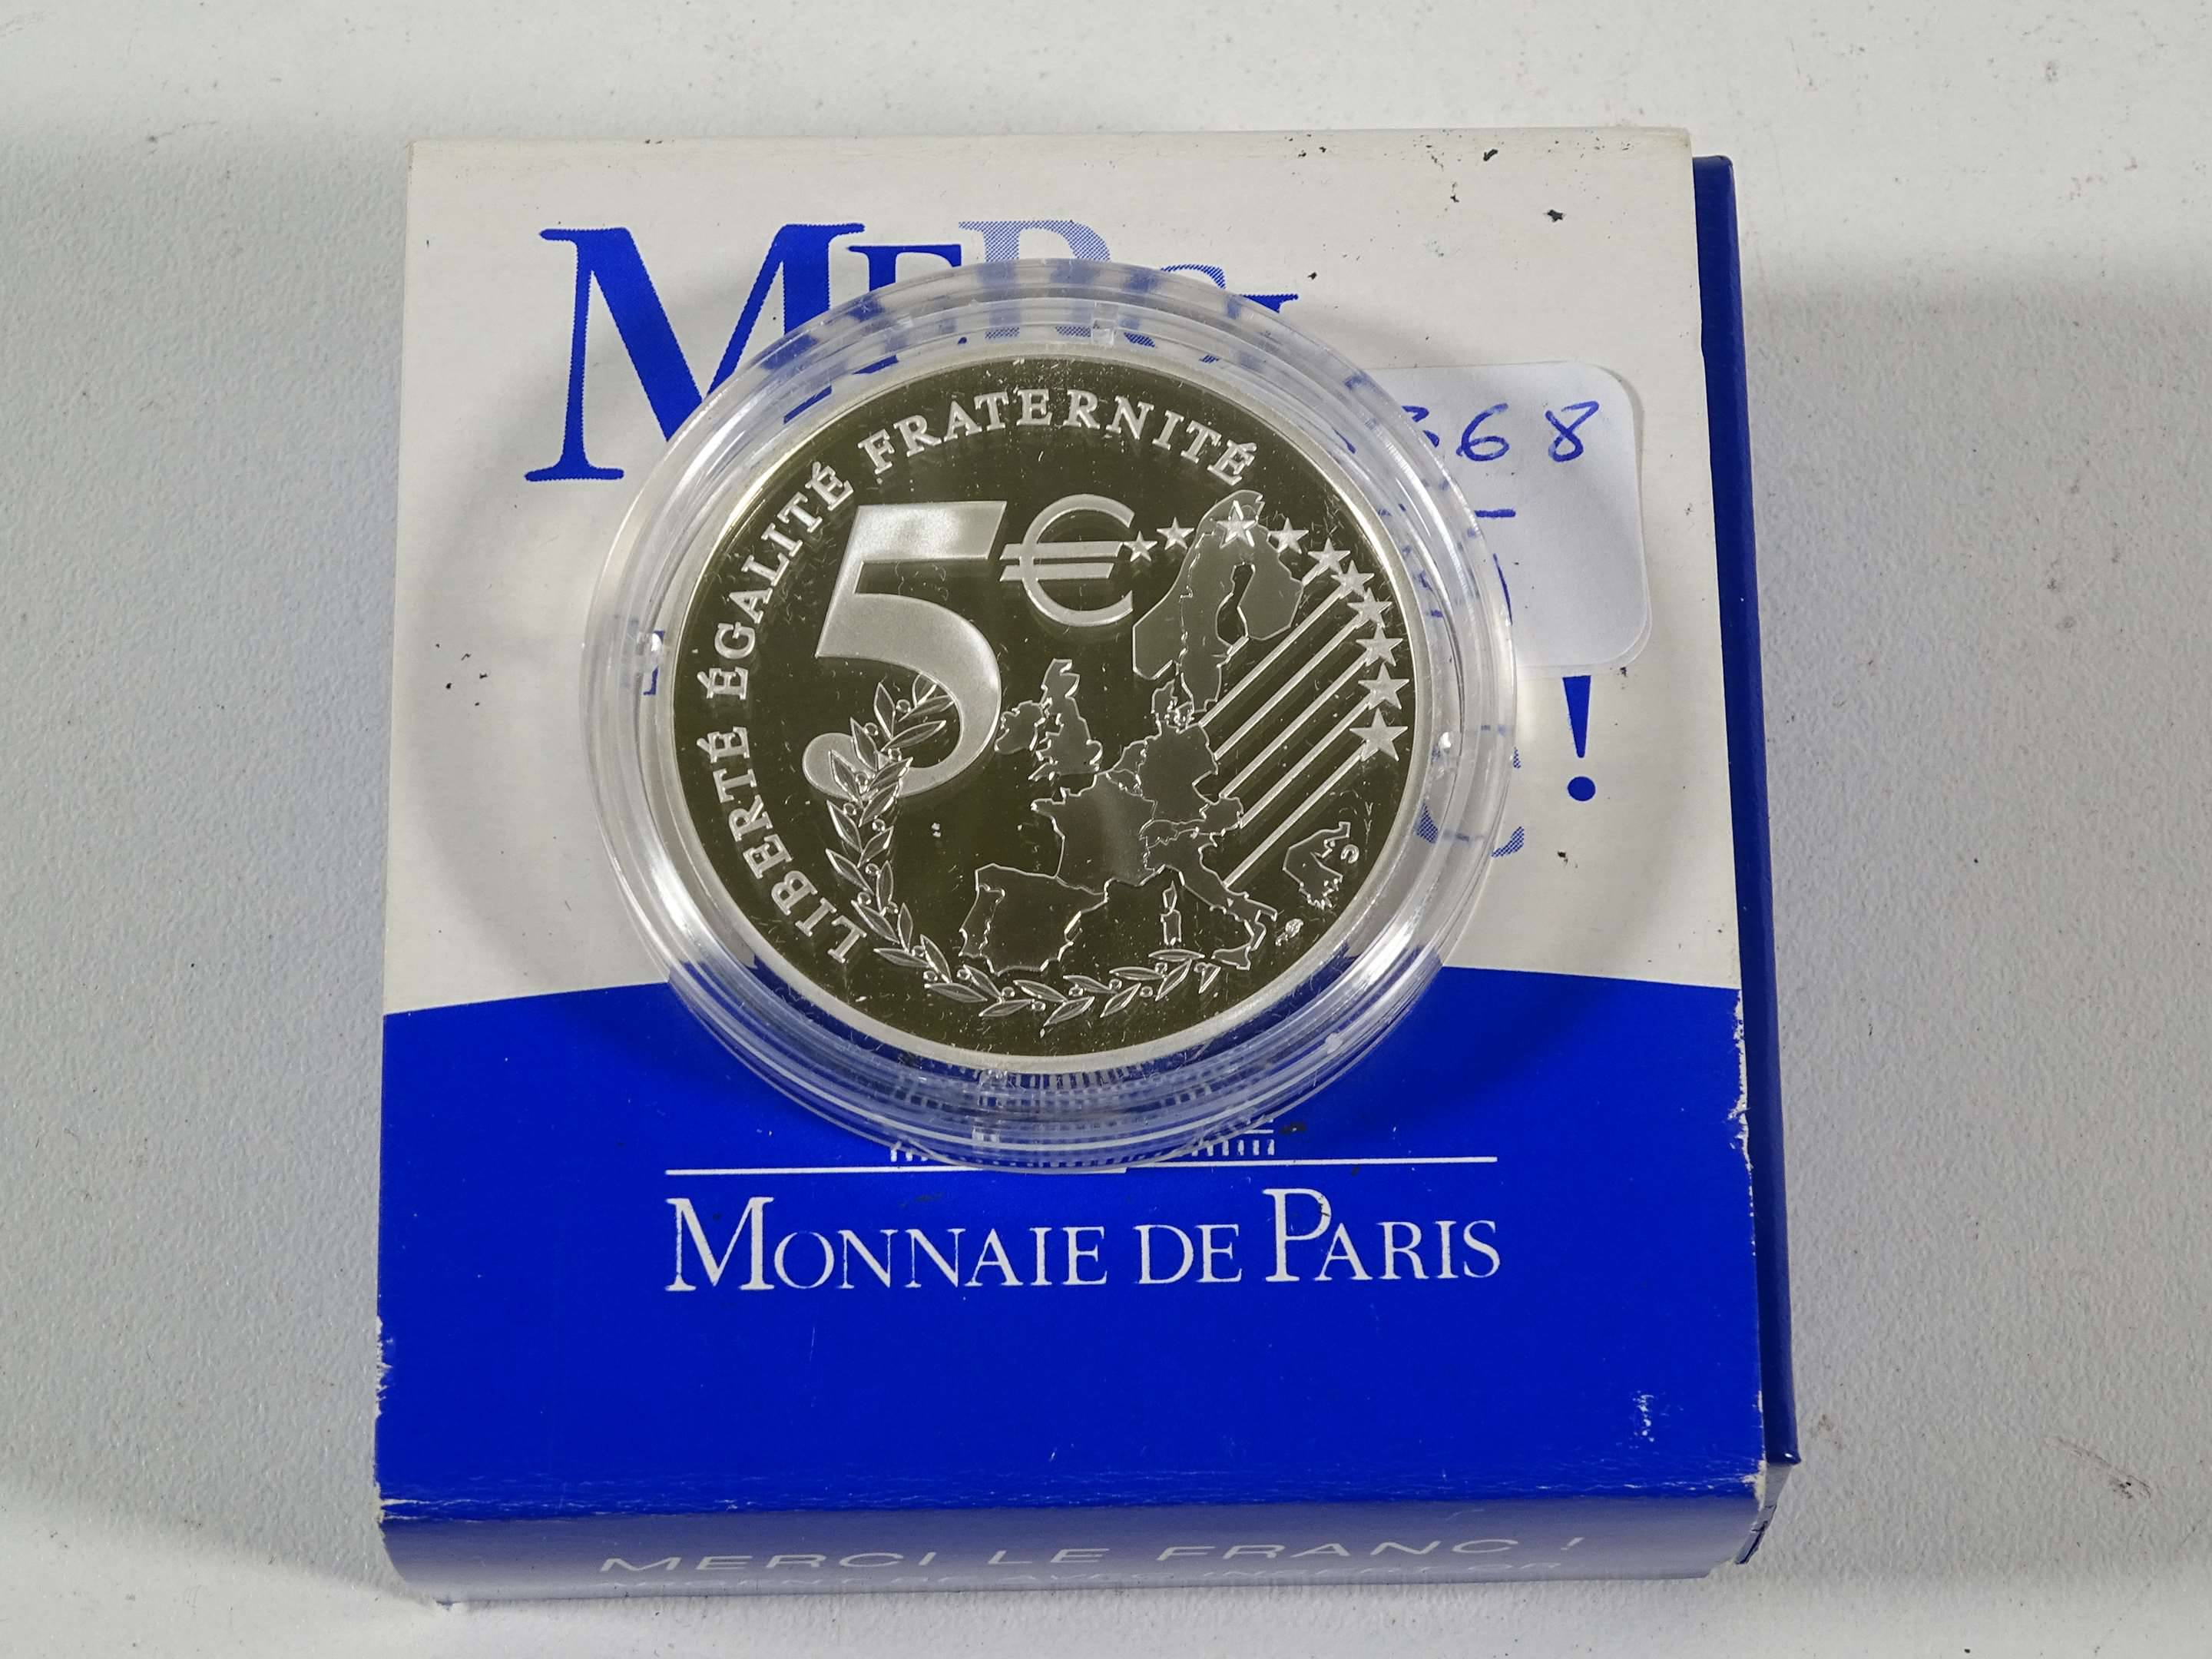 France France - La Semeuse 5 € 2002 Adieu au Franc or/argent BE